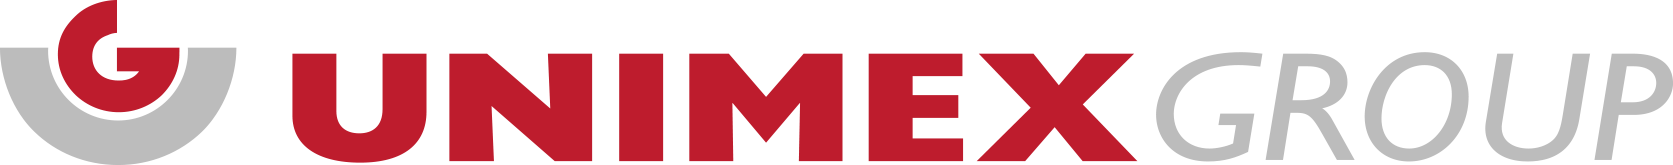 UNIMEX logo